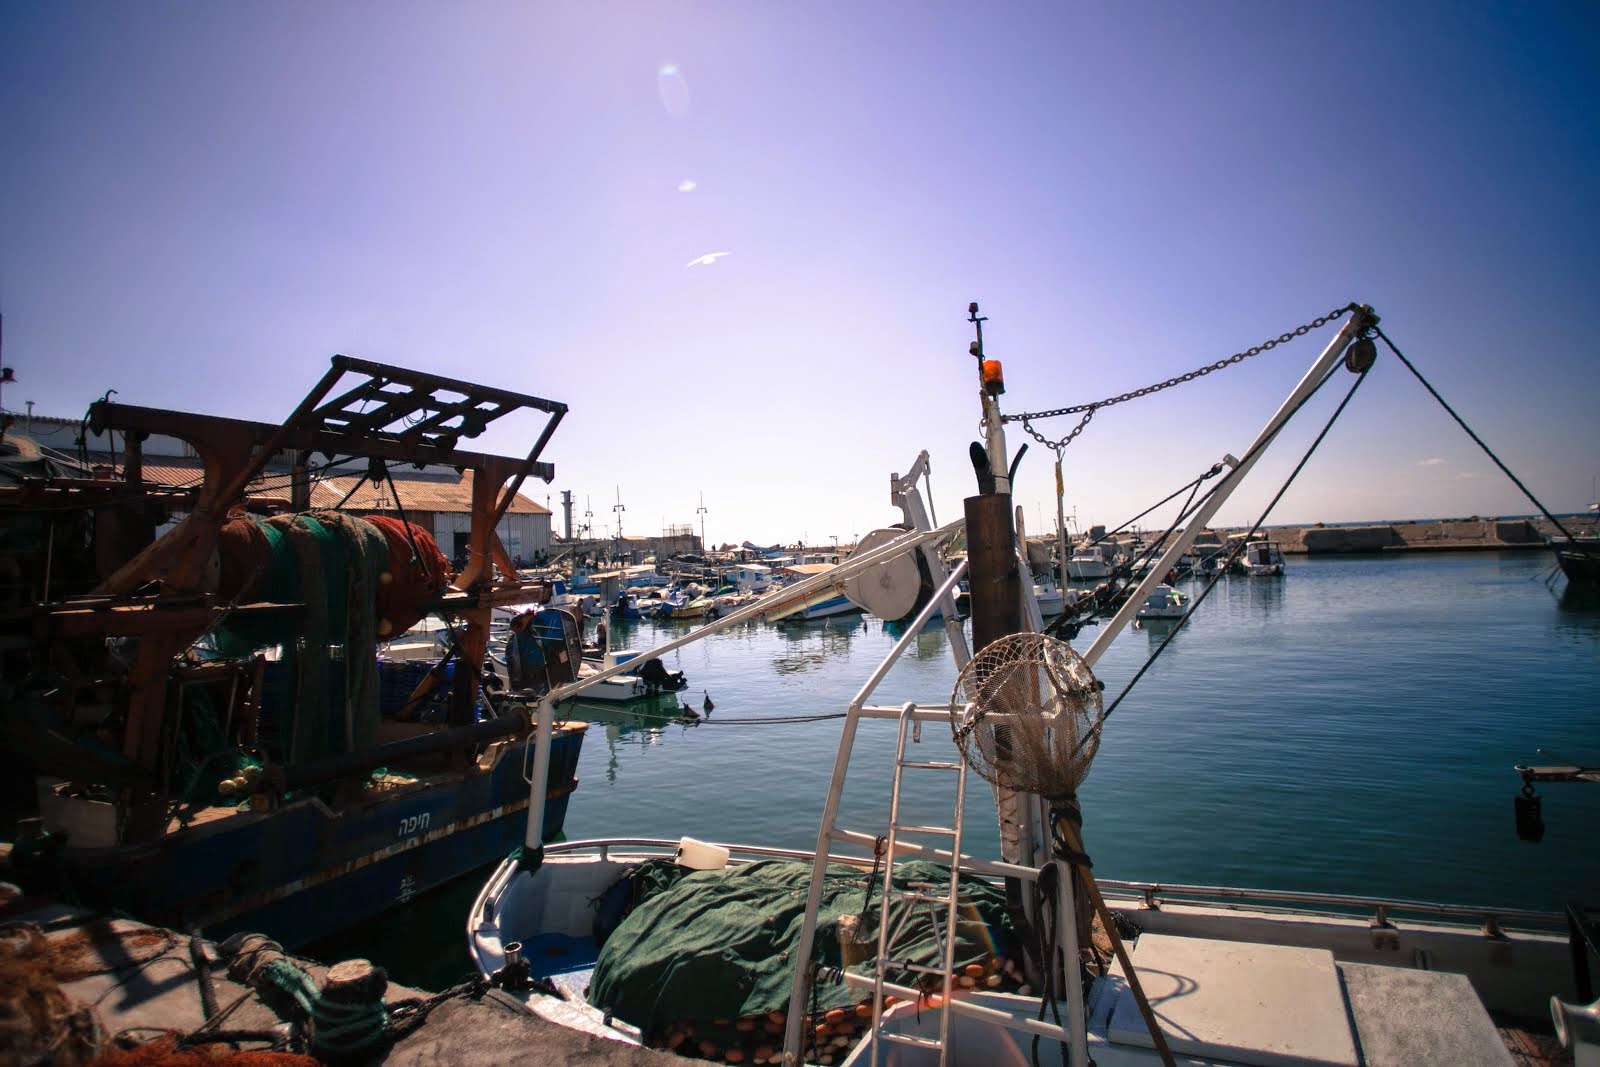 Jaffa Port